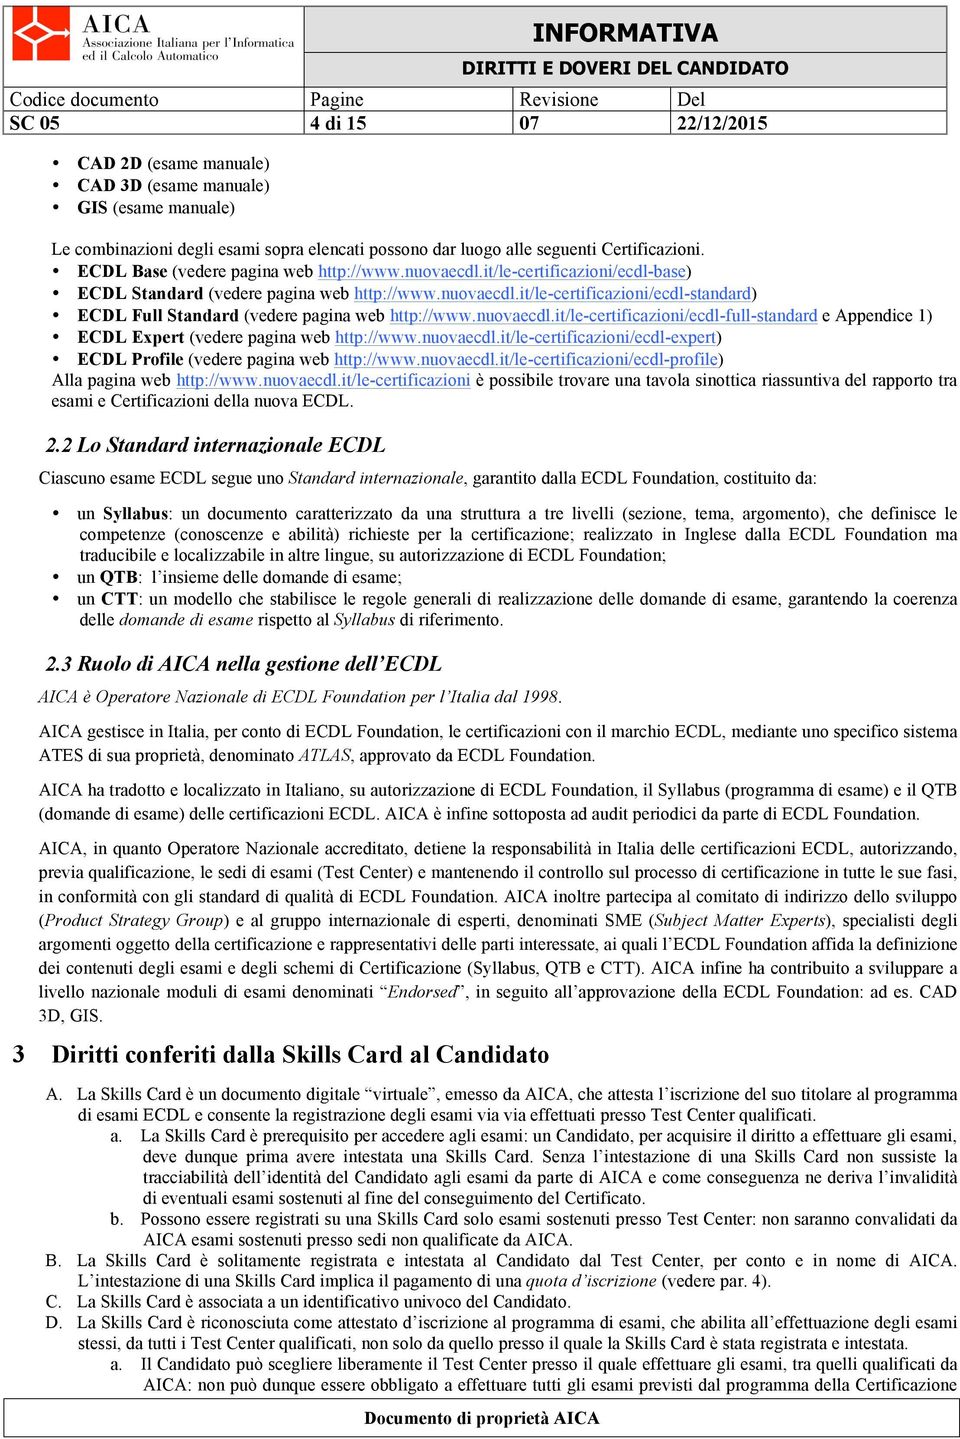 nuovaecdl.it/le-certificazioni/ecdl-full-standard e Appendice 1) ECDL Expert (vedere pagina web http://www.nuovaecdl.it/le-certificazioni/ecdl-expert) ECDL Profile (vedere pagina web http://www.